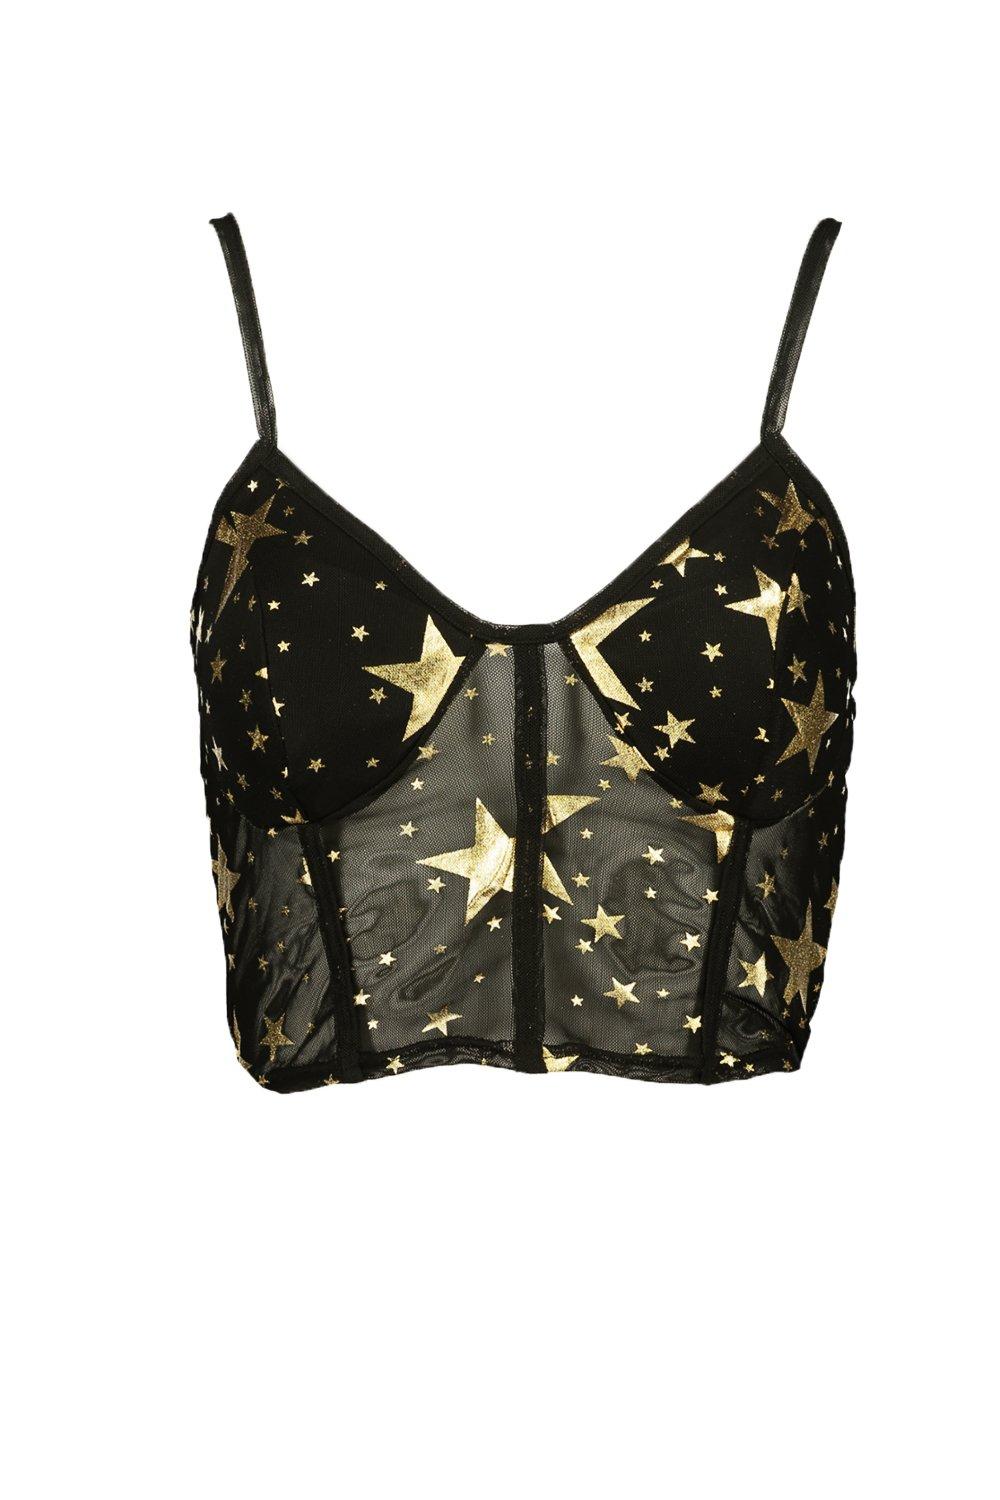 https://media.boohoo.com/i/boohoo/fzz63916_black_xl_2/star-print-mesh-corset-top